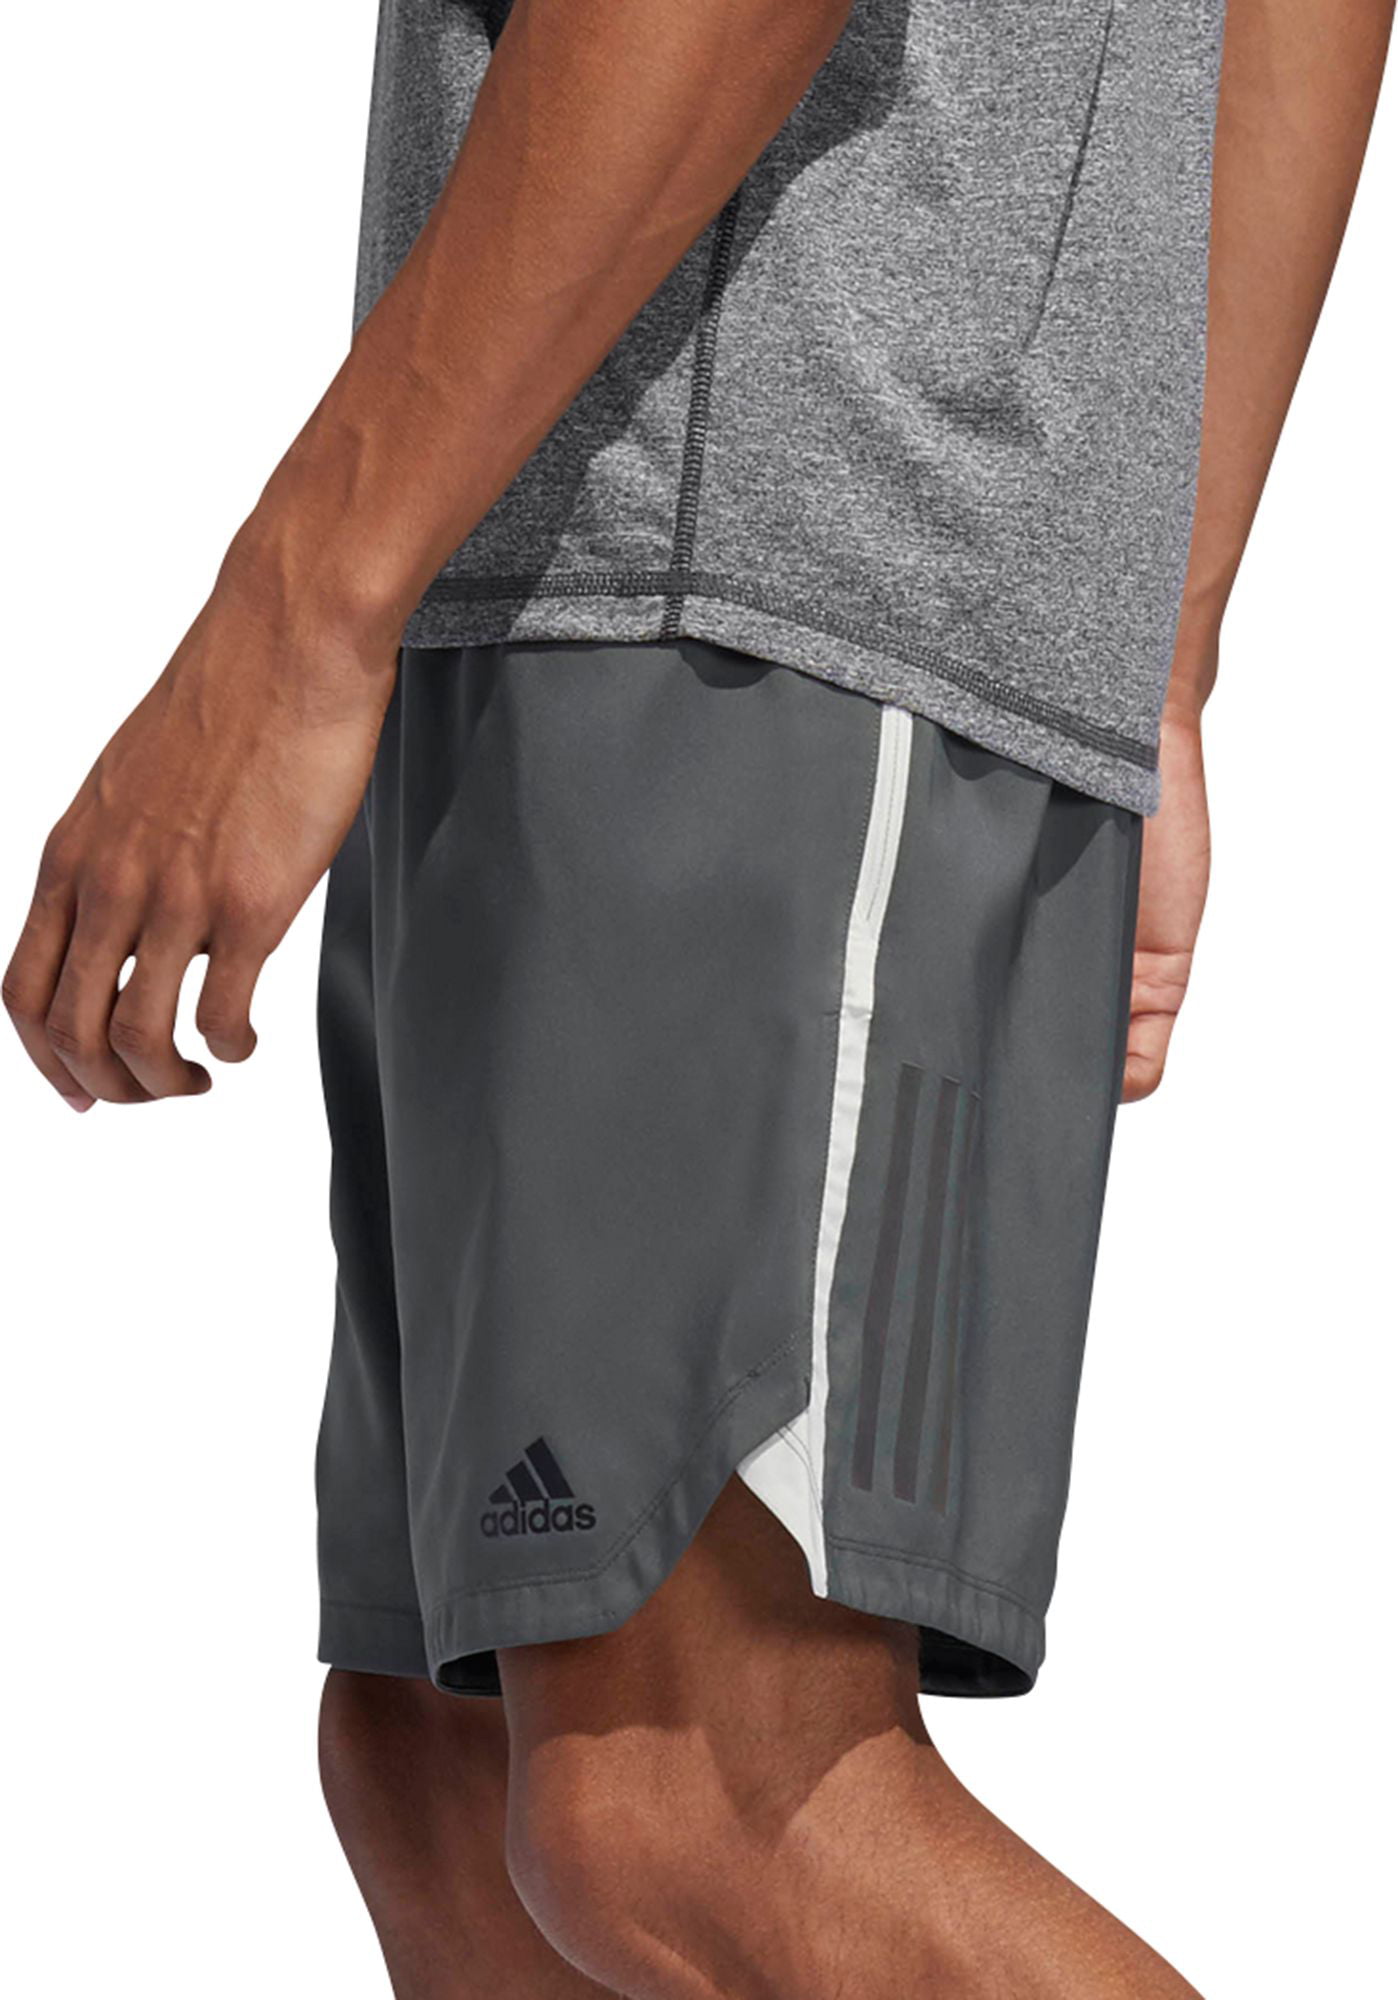 adidas axis shorts